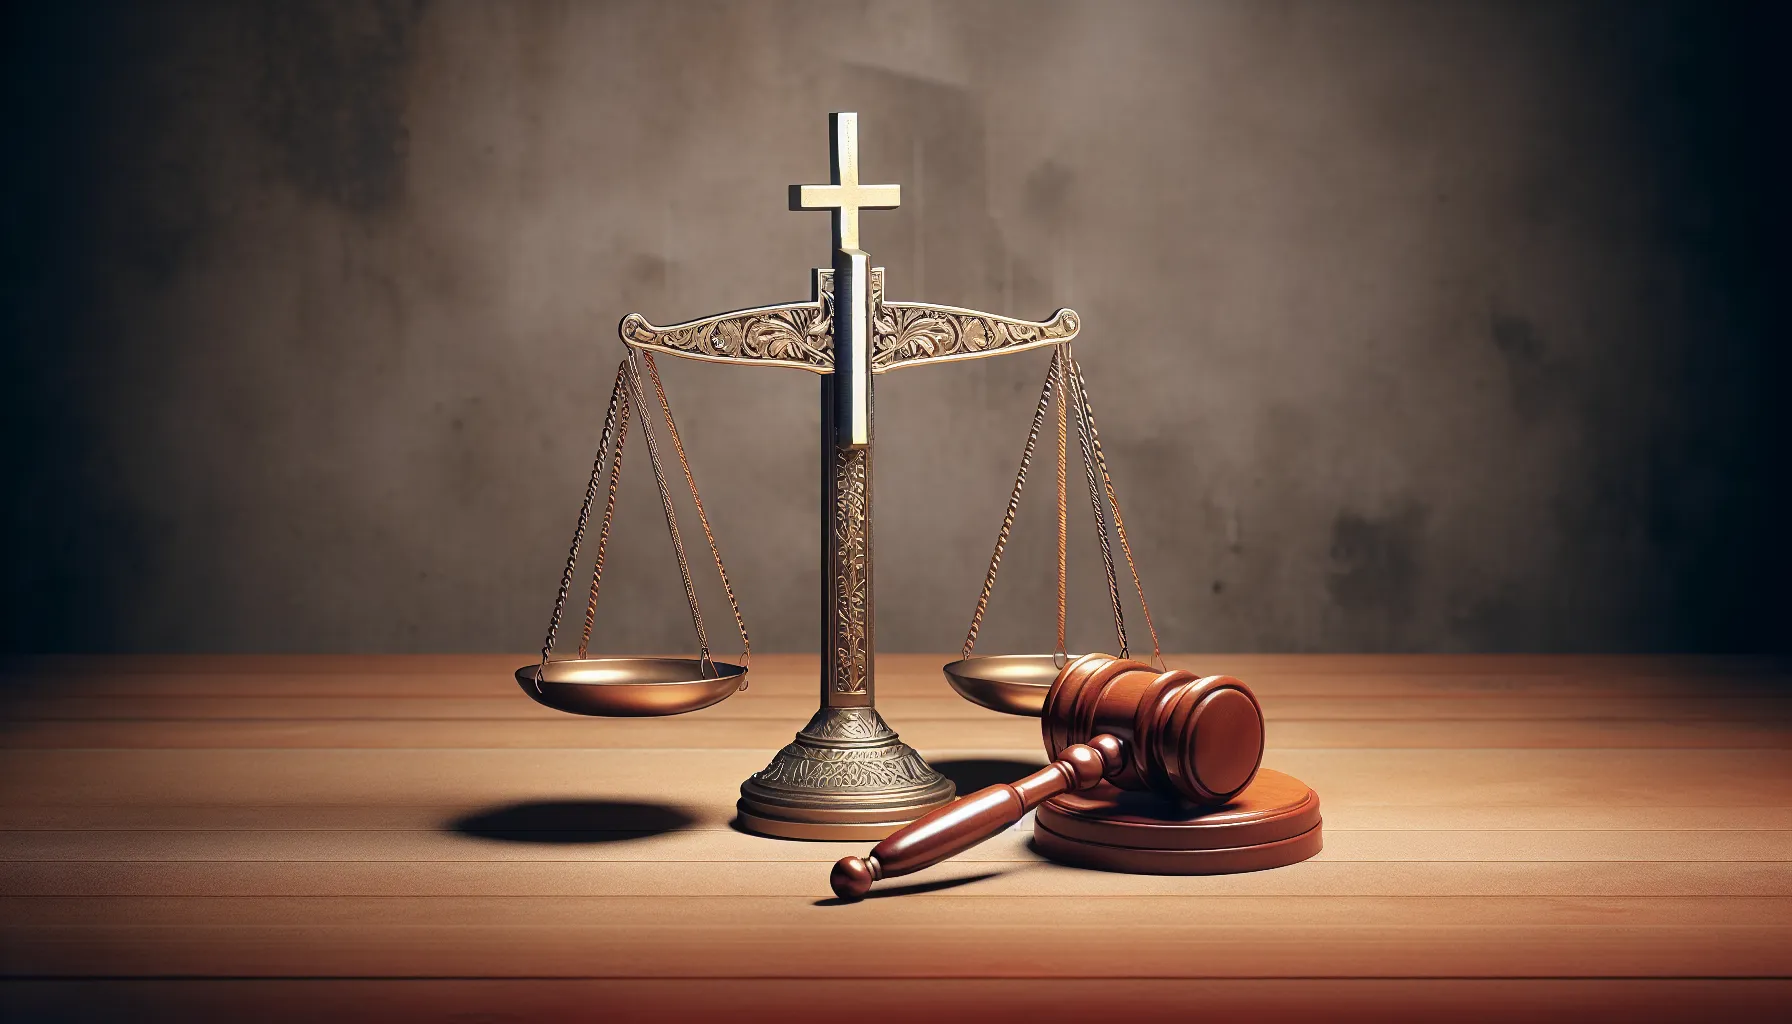 Imagen representativa de una balanza desequilibrada junto a una cruz